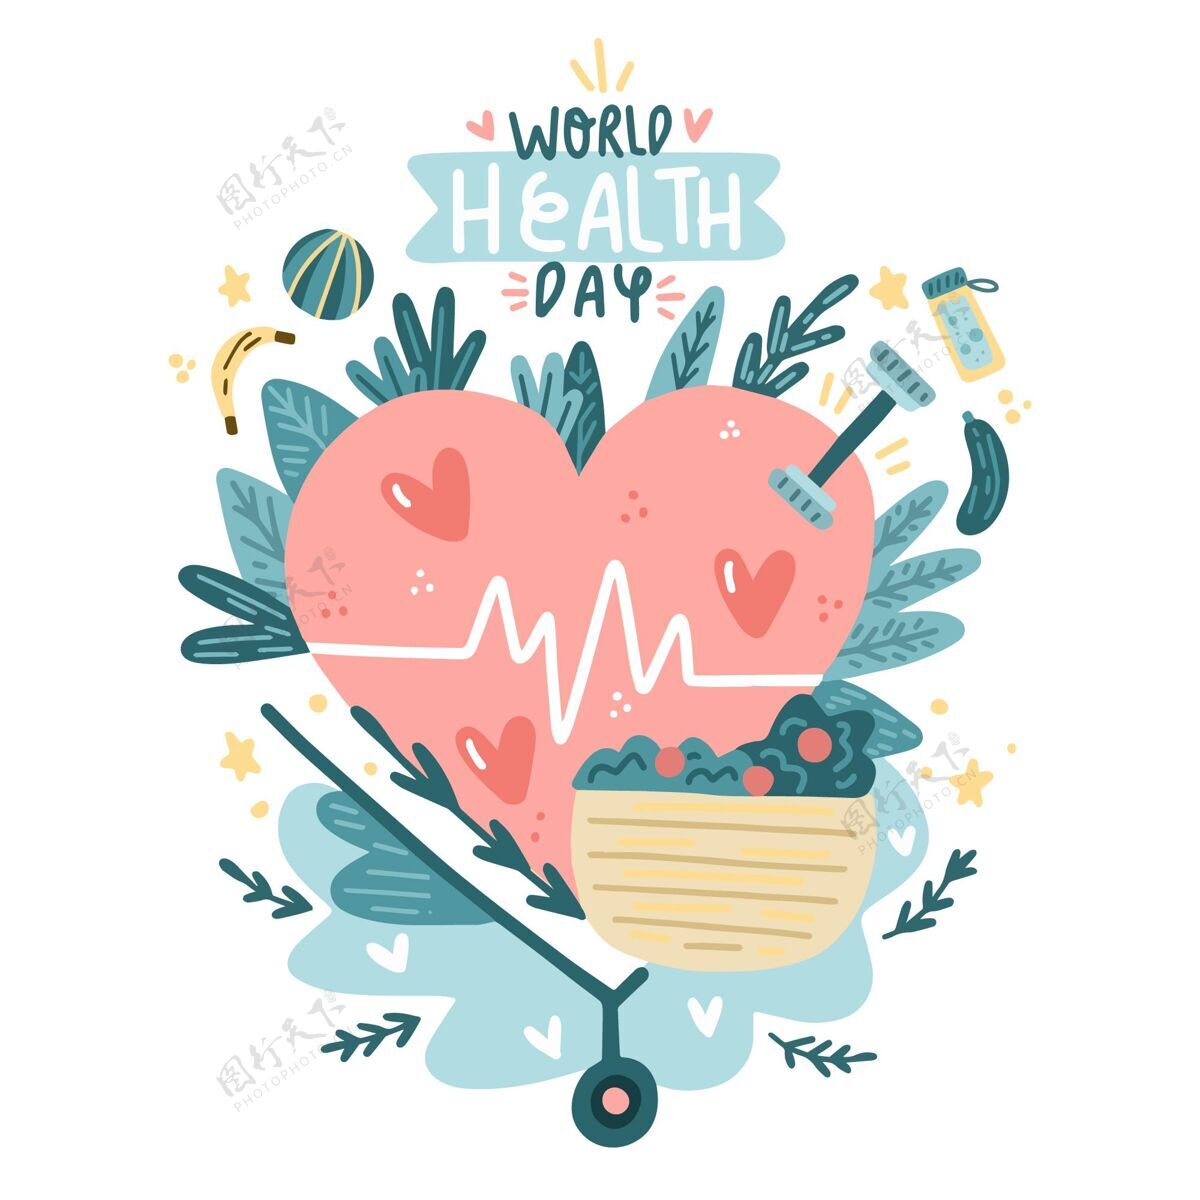 医学手绘世界卫生日插图全球活动医疗保健